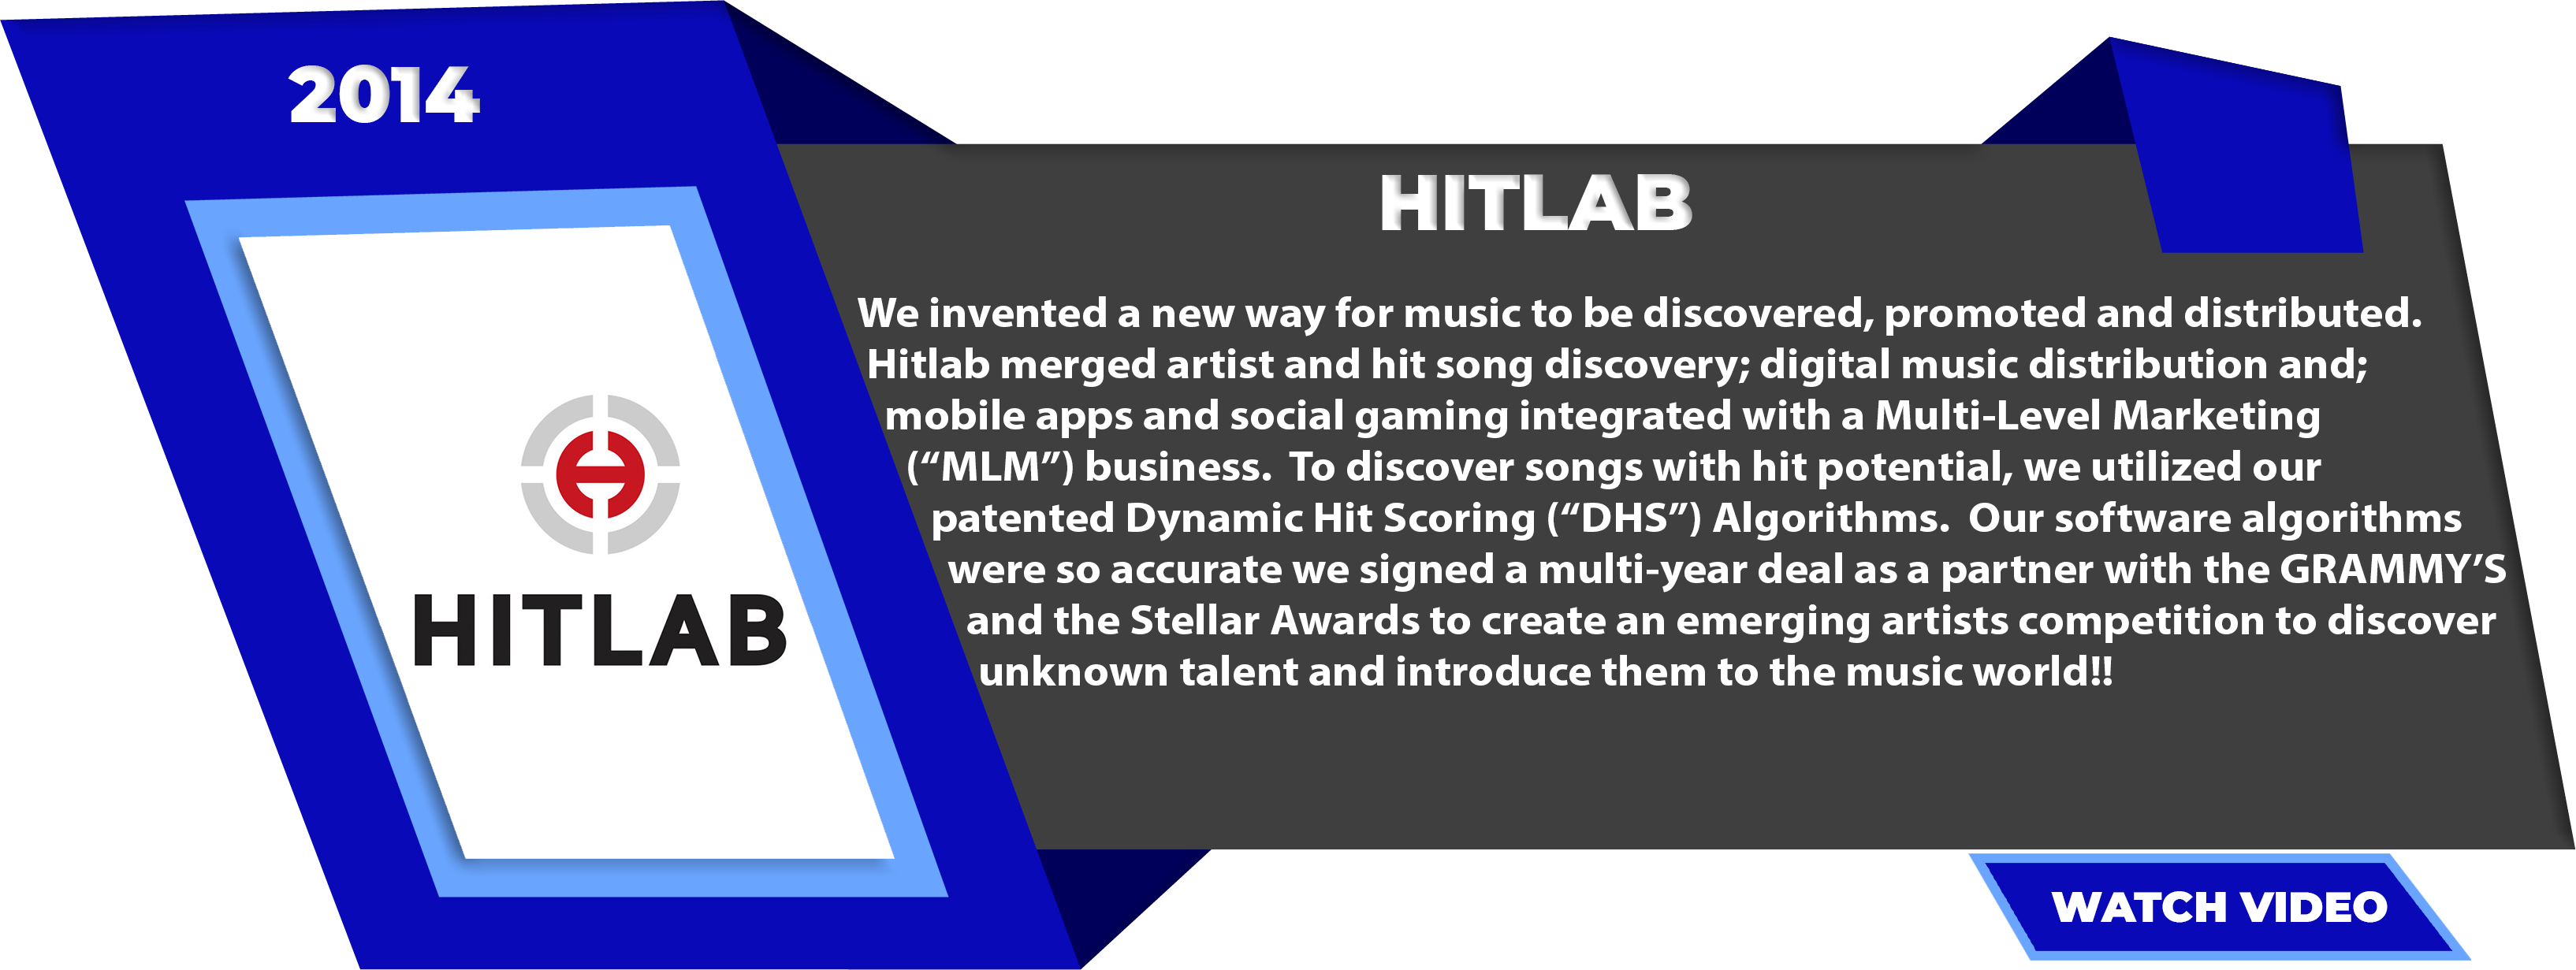 HitLab 2014